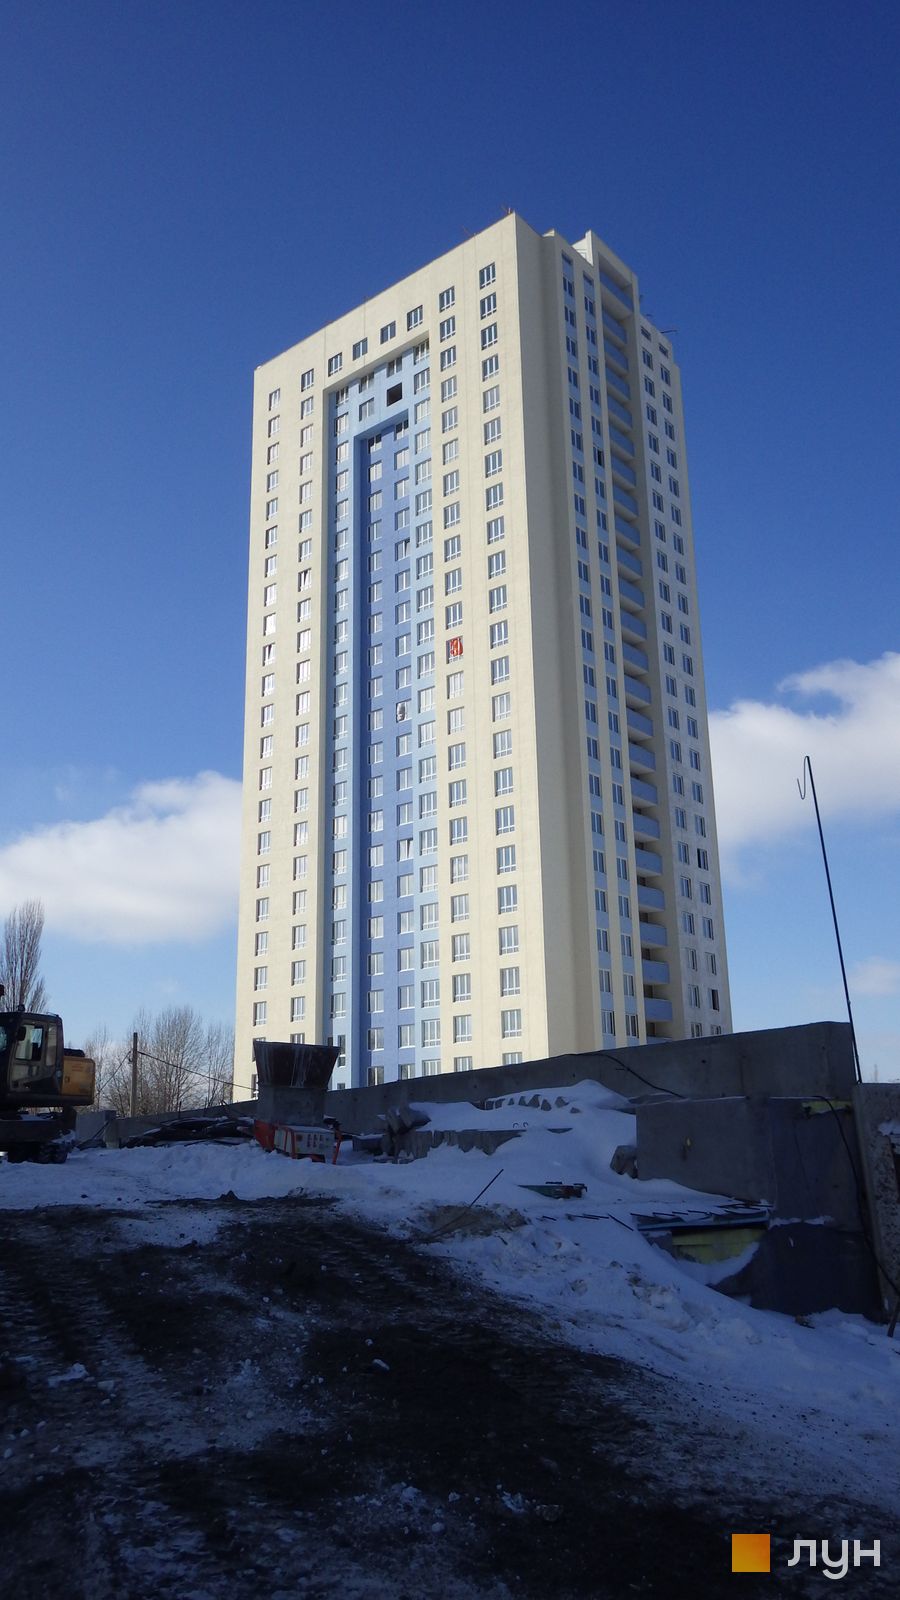 Моніторинг будівництва ЖК Академіка Глушкова, 92б - Ракурс 4, лютий 2015